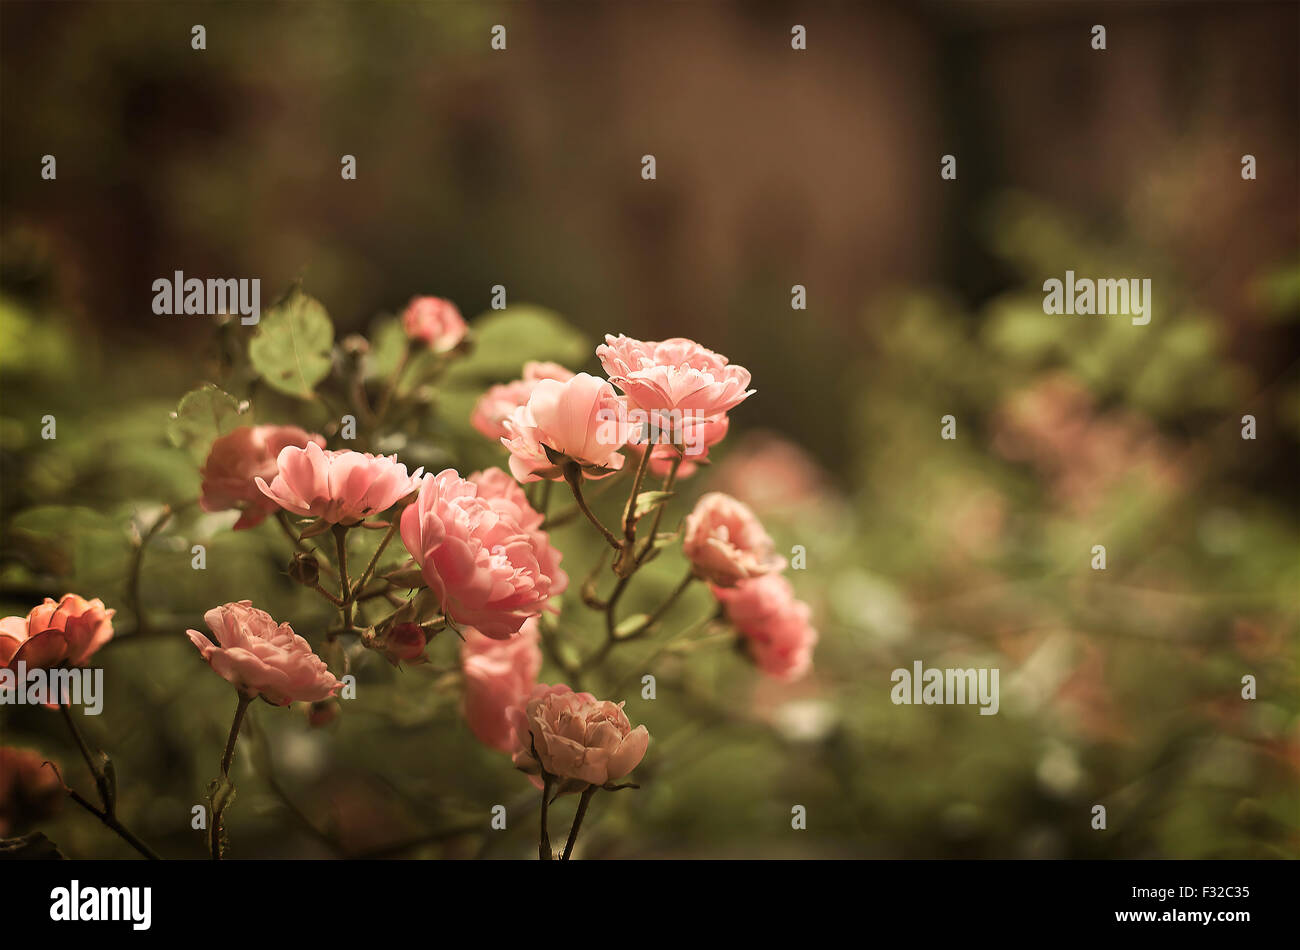 Immagine di rose delicate nella luce della sera. Profondità di campo. Foto Stock